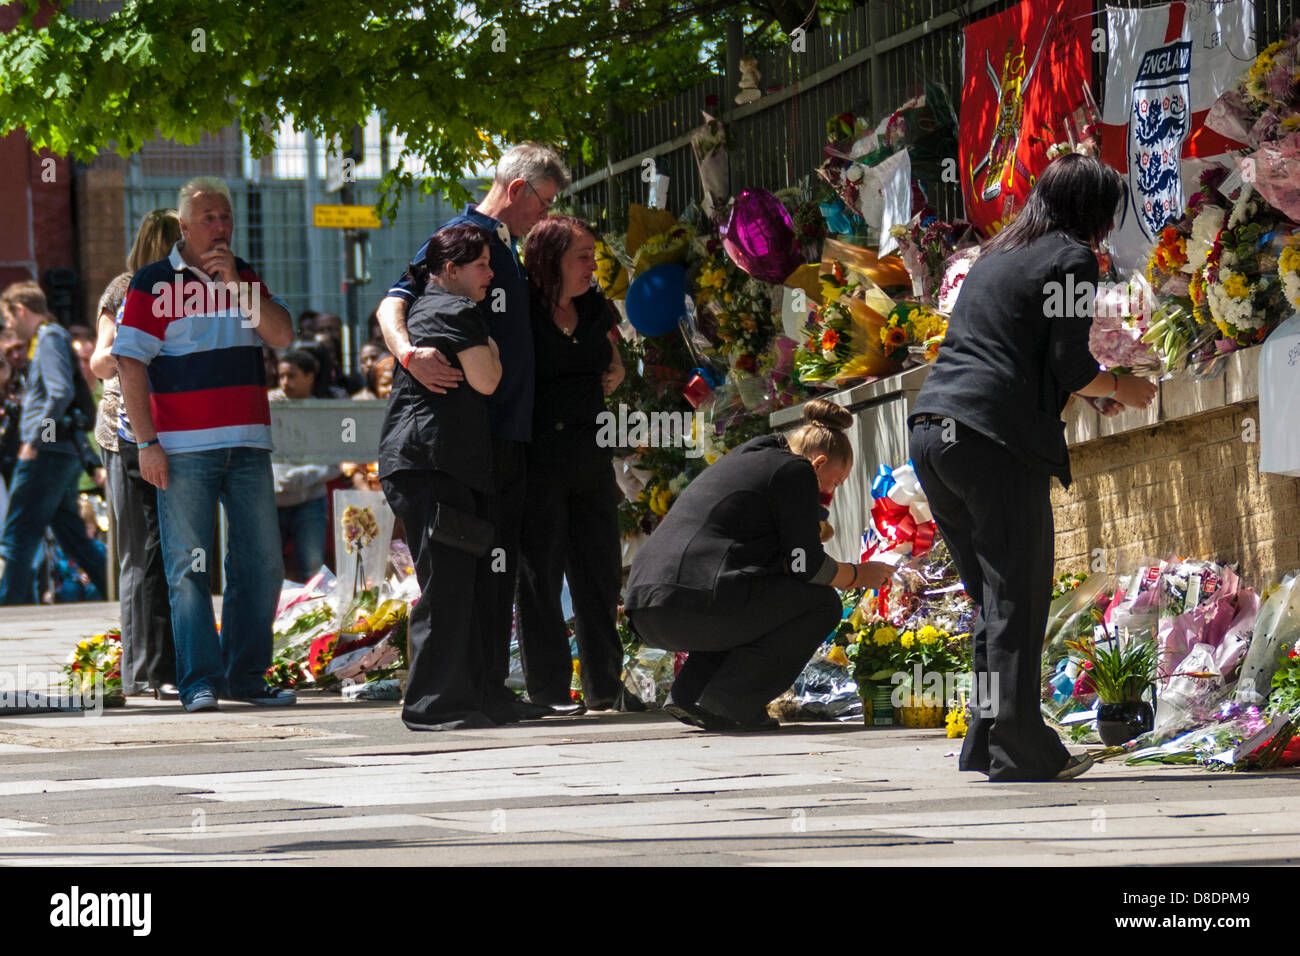 Londres, Royaume-Uni. 26 mai, 2013. Les membres du soldat assassiné le batteur Lee Rigby visitez le site de Woolwich son assassinat pour voir les milliers d'tibutes floral. Crédit : Paul Davey/Alamy Live News Banque D'Images